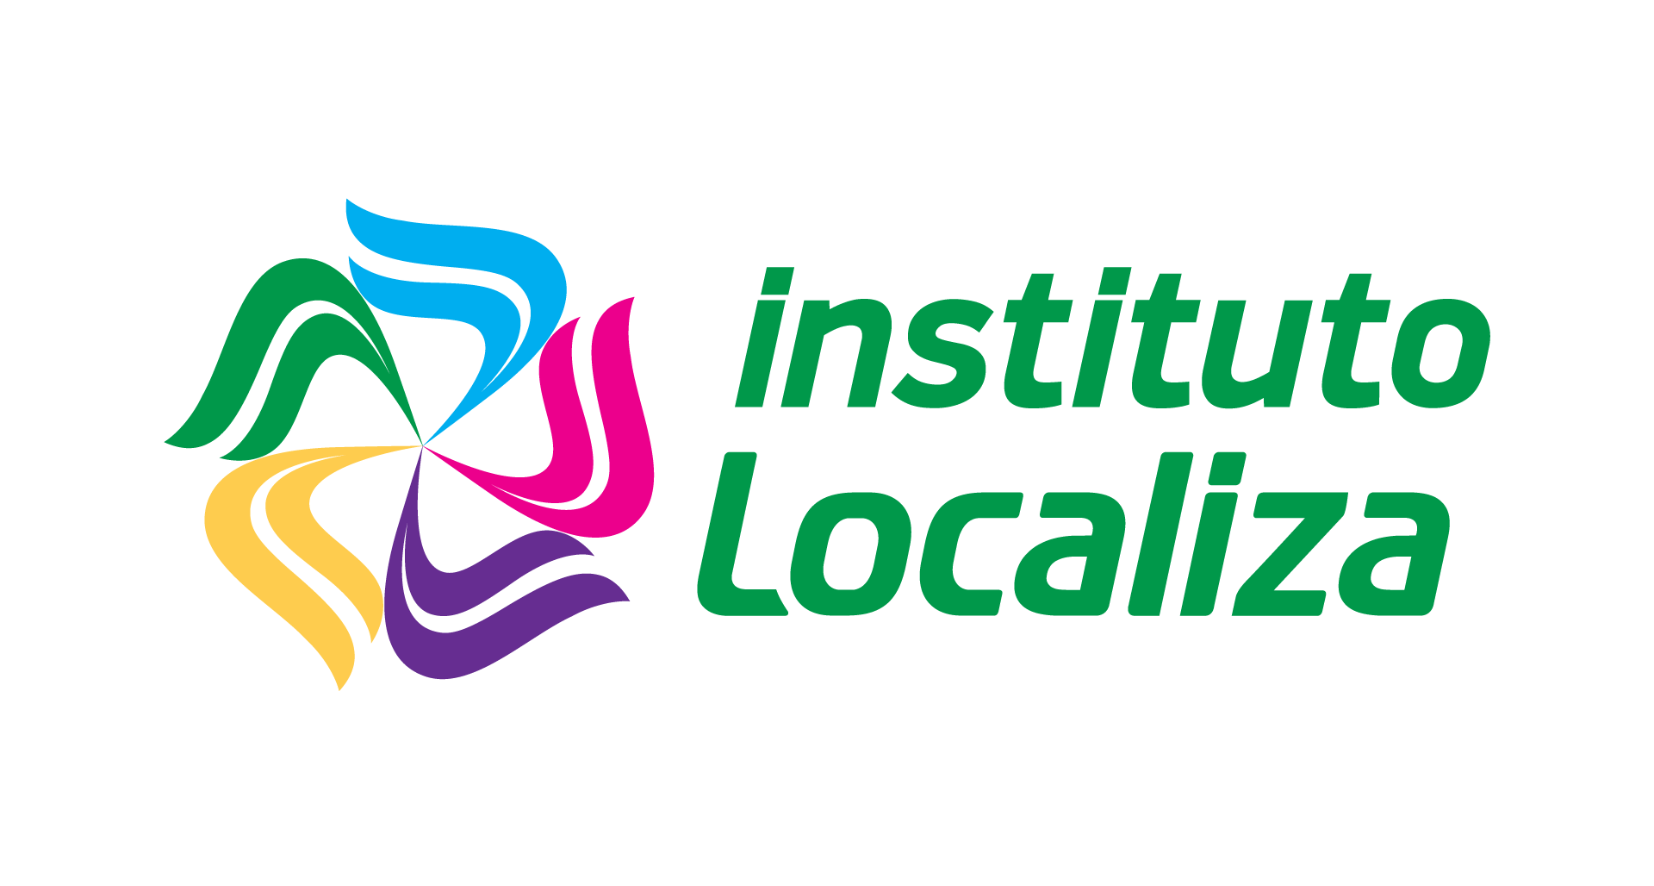 Instituto Localiza